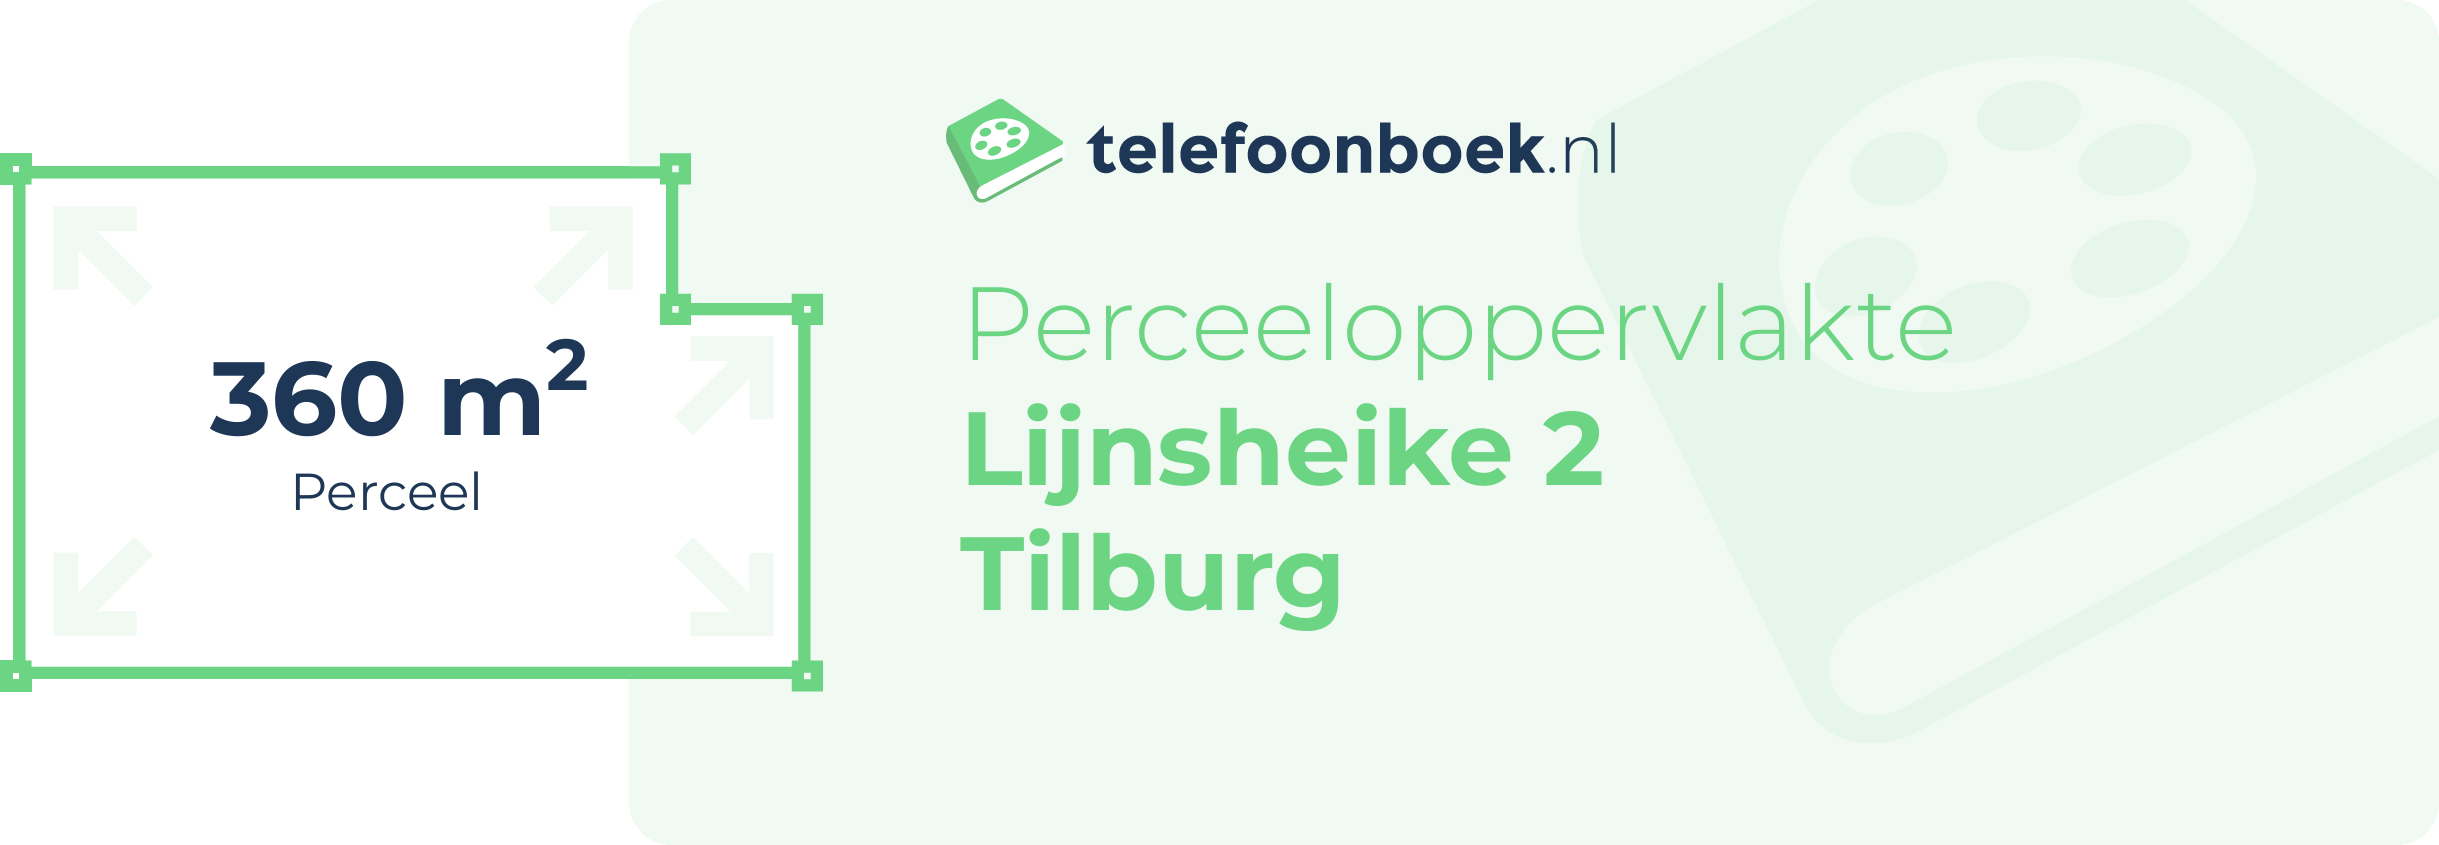 Perceeloppervlakte Lijnsheike 2 Tilburg